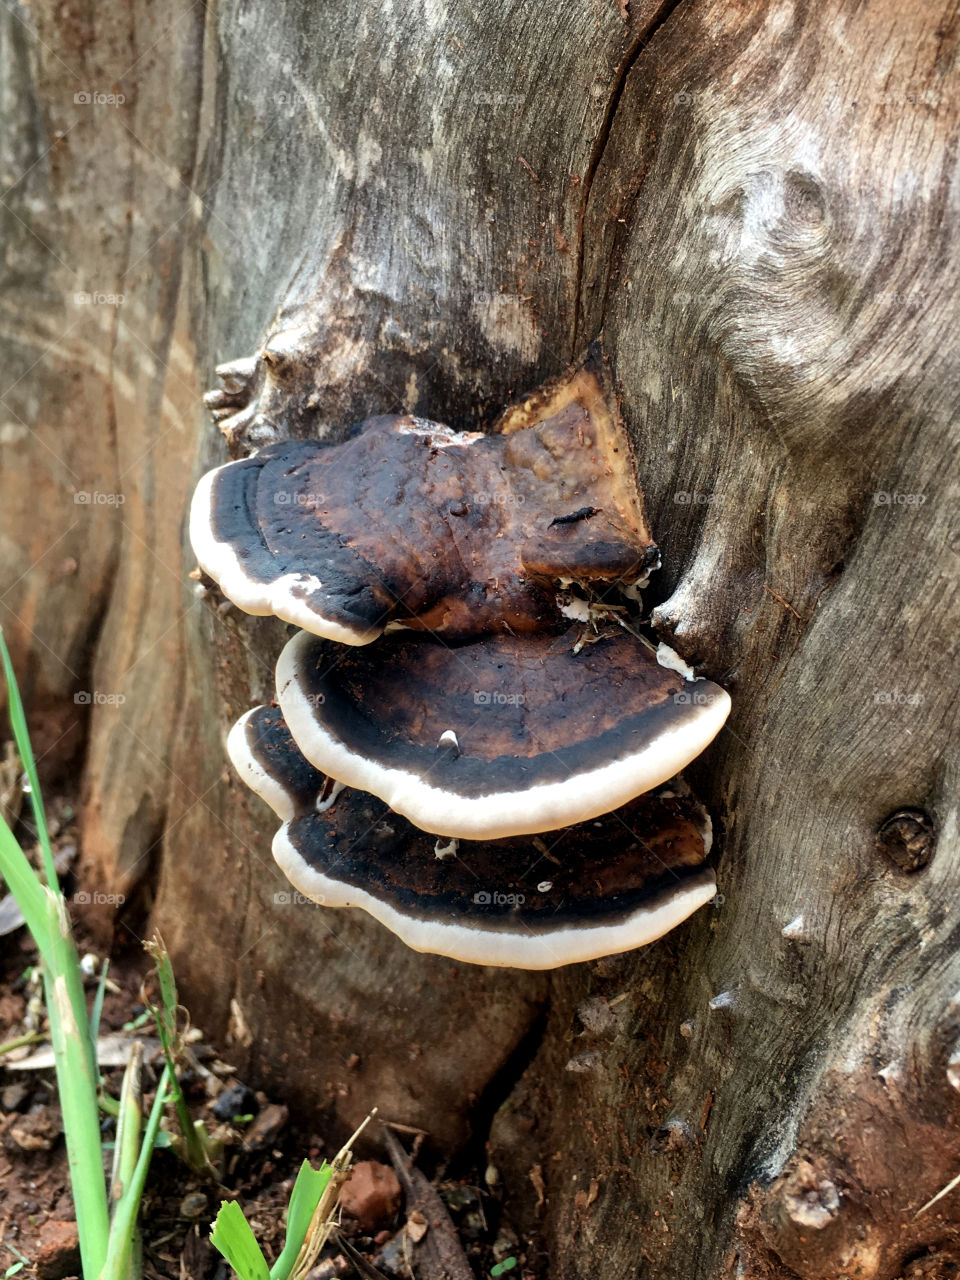 Mushrooms on wood